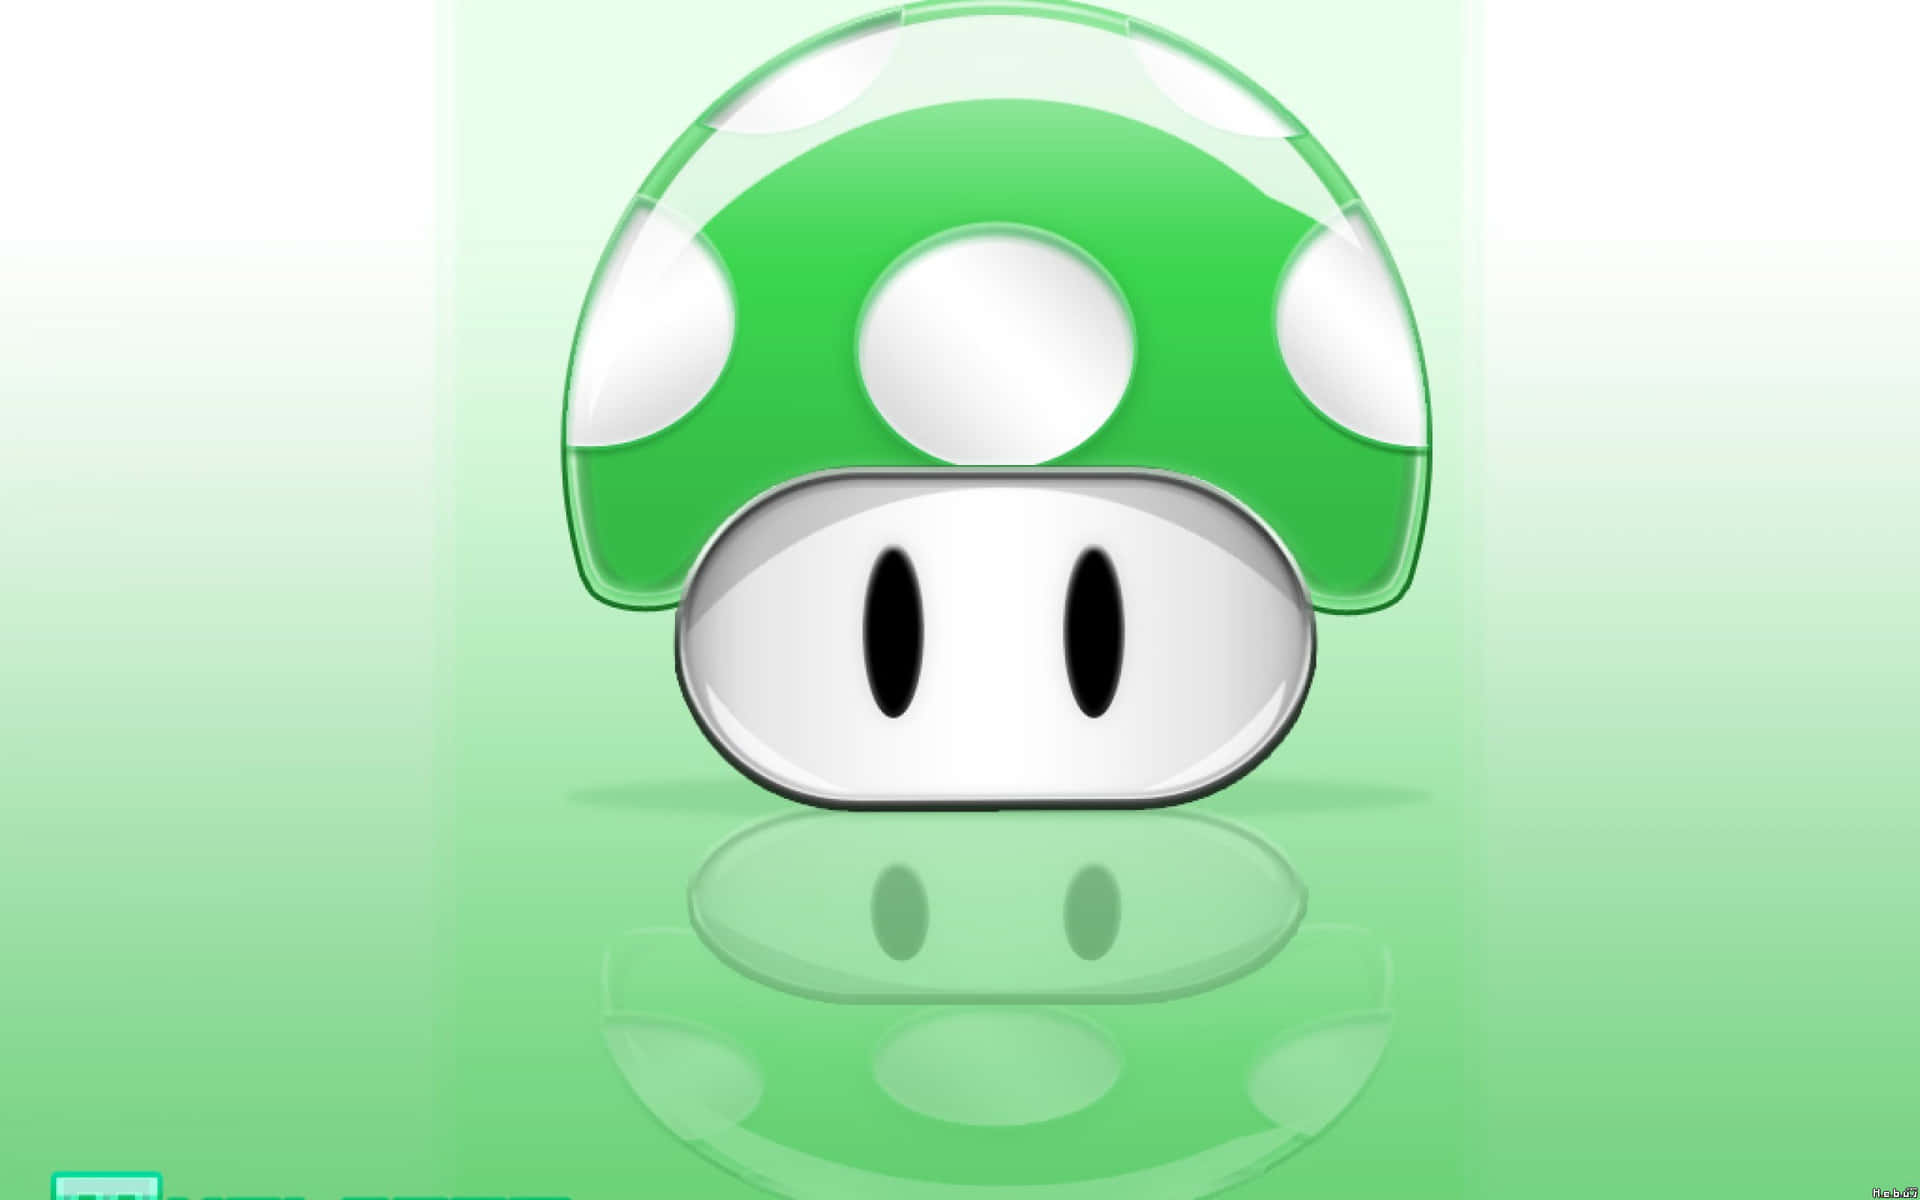 Mario collecting a Super Mushroom in a vibrant game scene Wallpaper